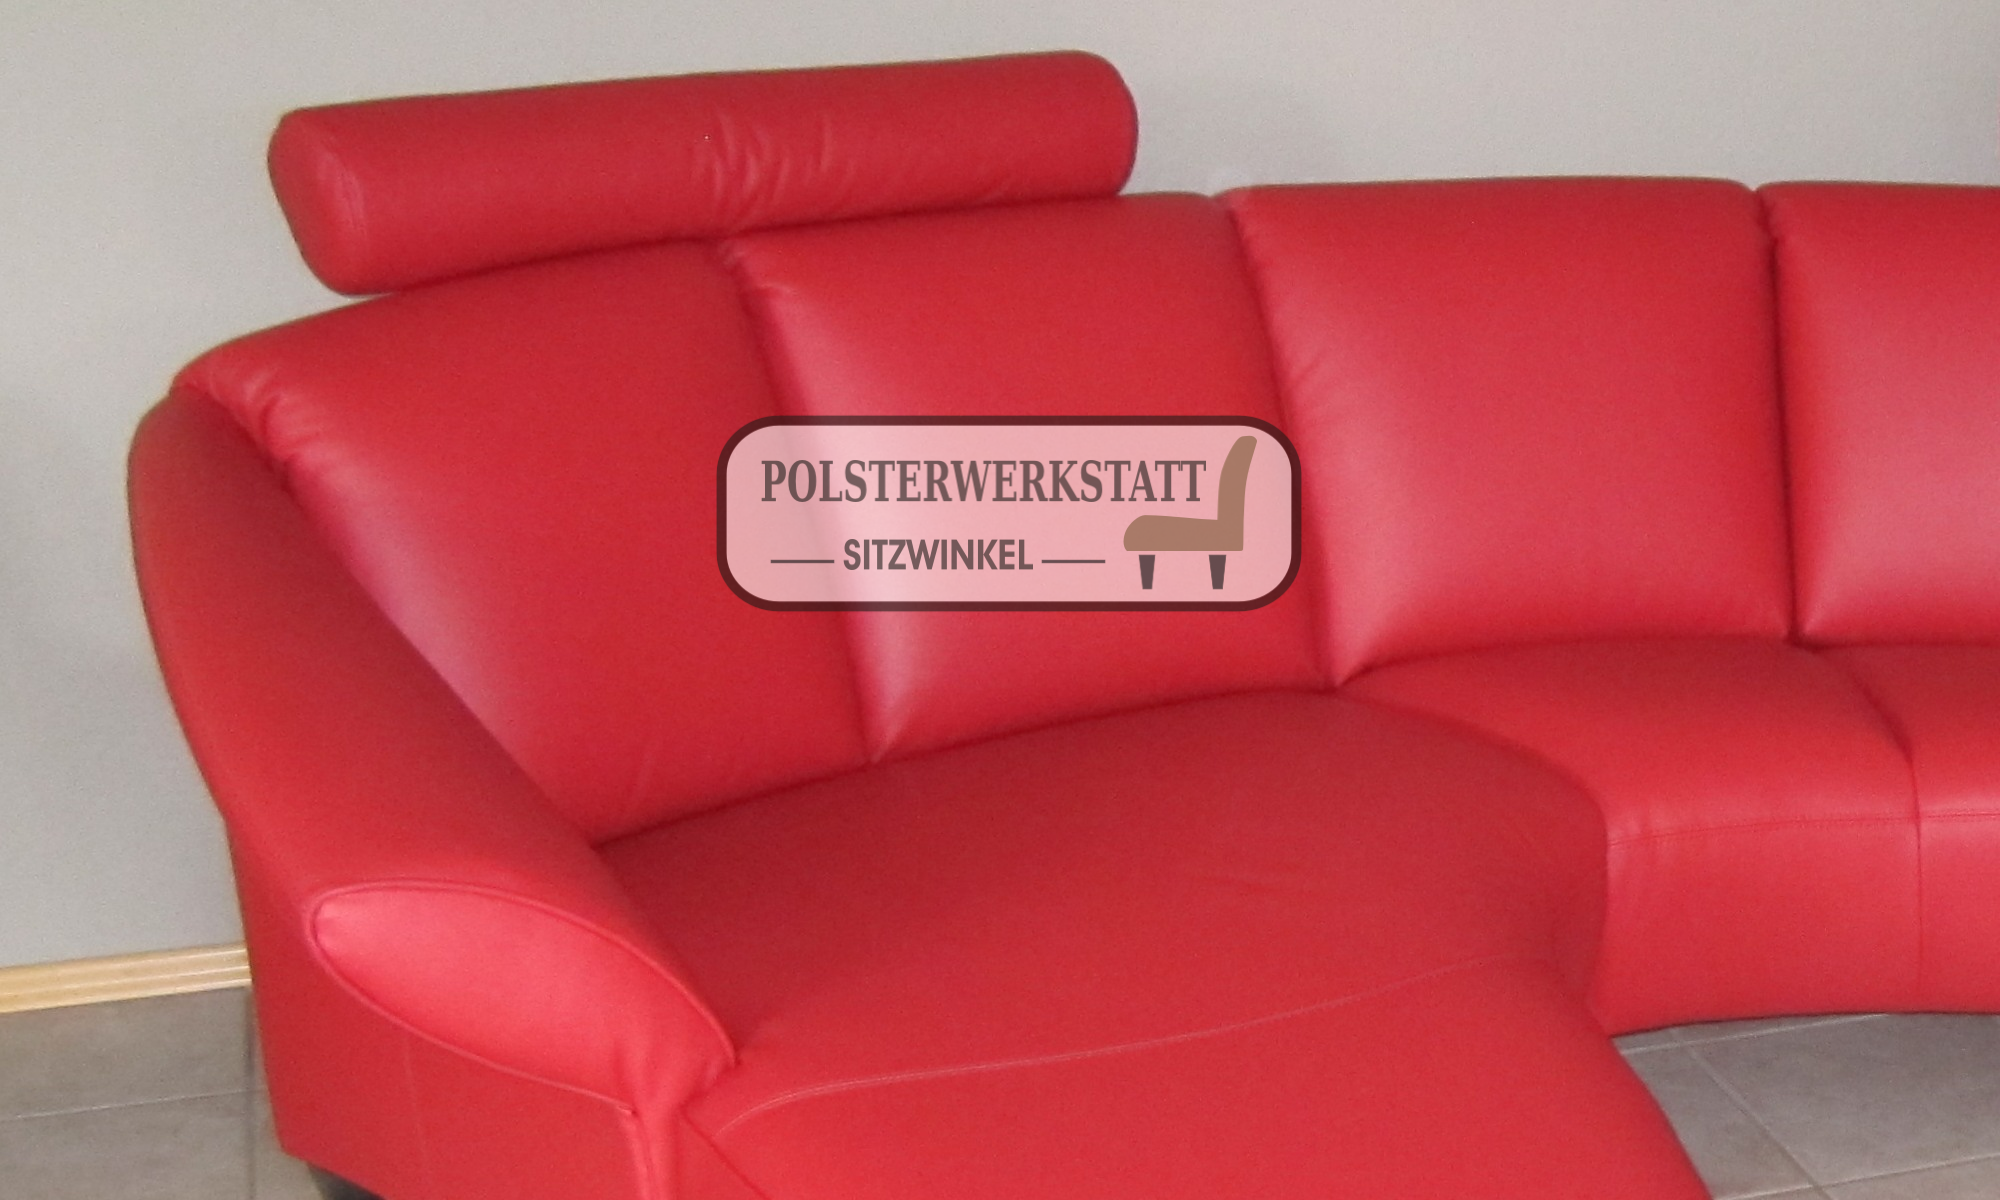 Polster-Werkstatt Sitzwinkel